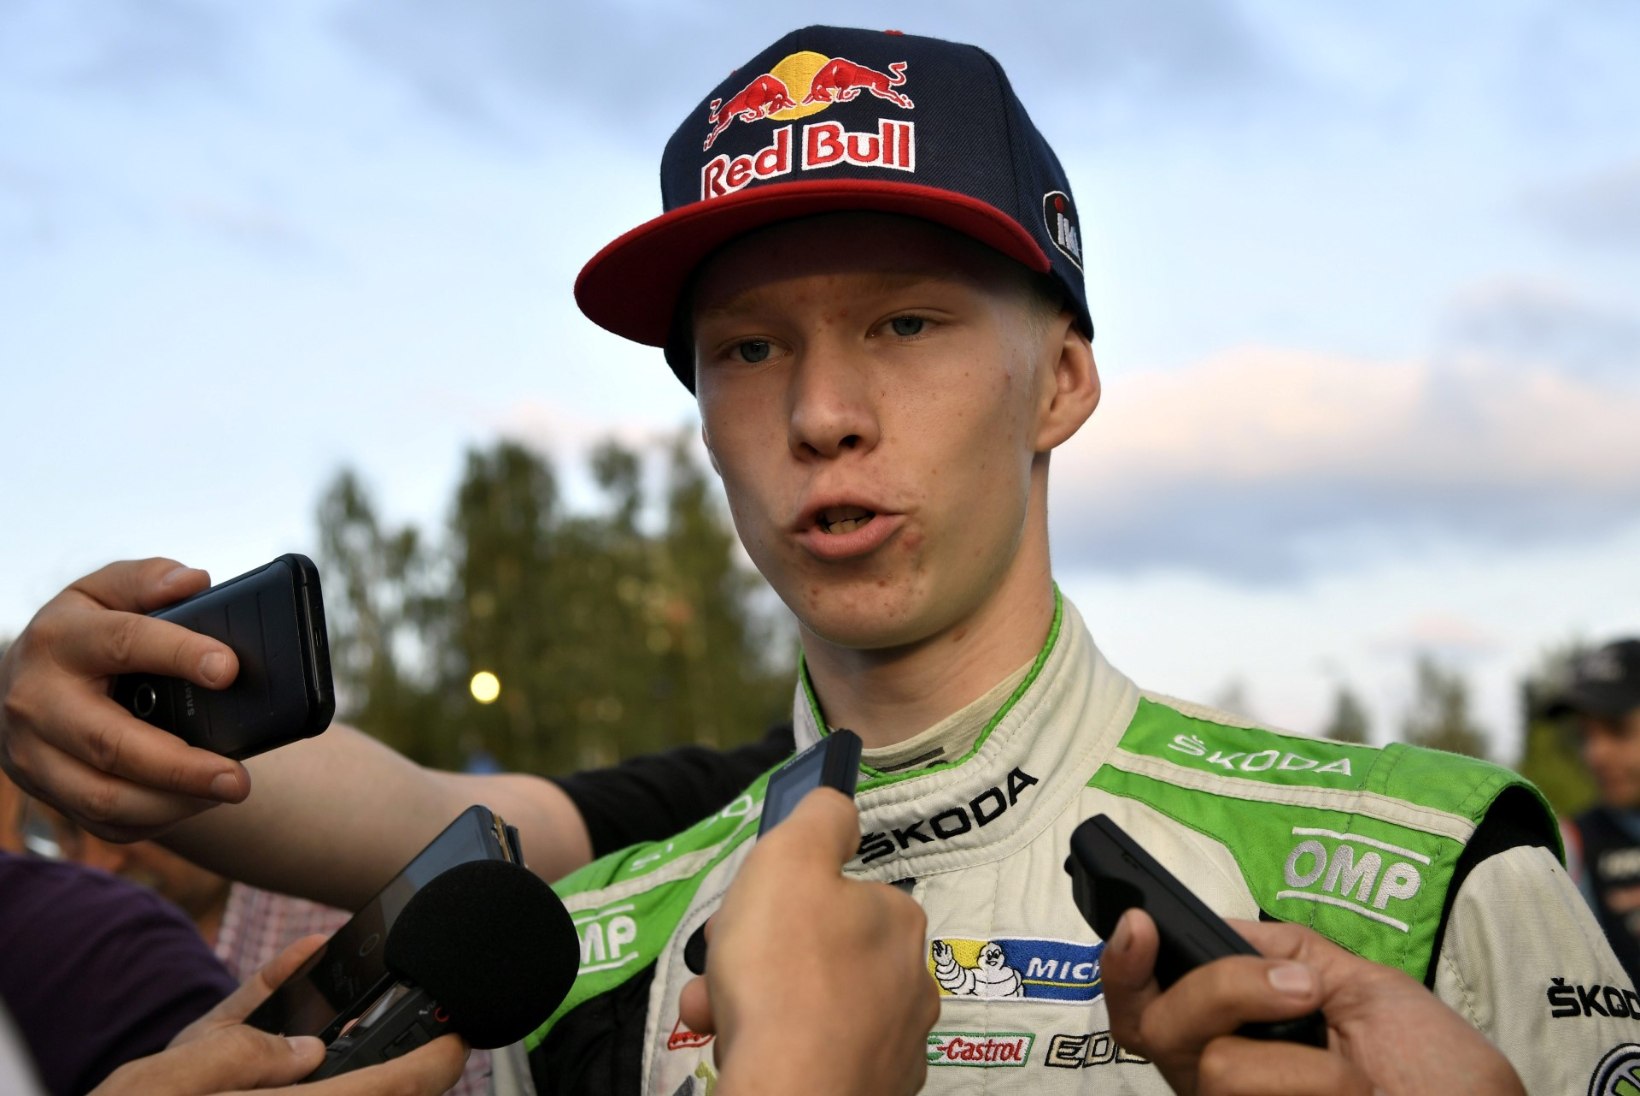 Soome rallitalent WRC-sarjast: võin vabalt juba aastaks 2020 valmis olla